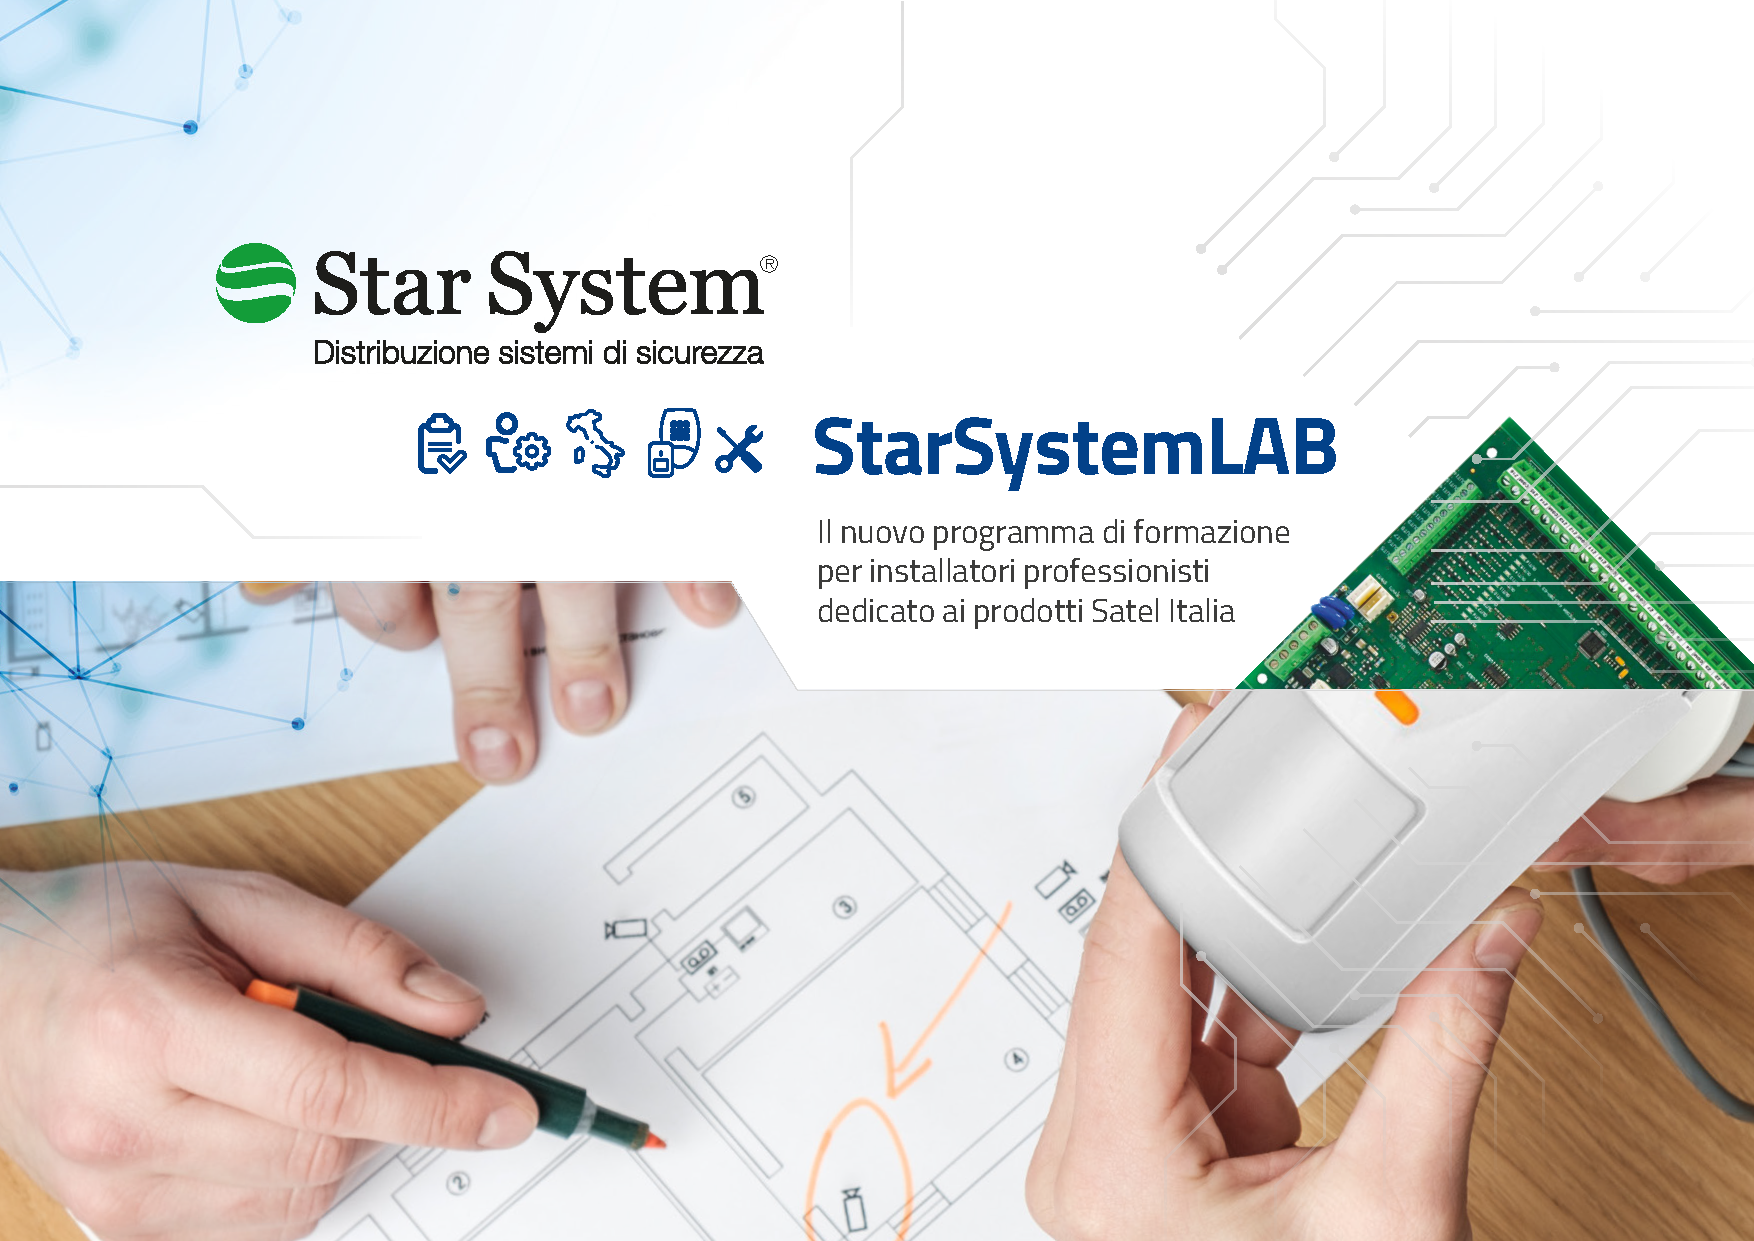 Star System LAB Il nuovo programma di formazione per installatori professionisti dedicato ai prodotti Satel Italia